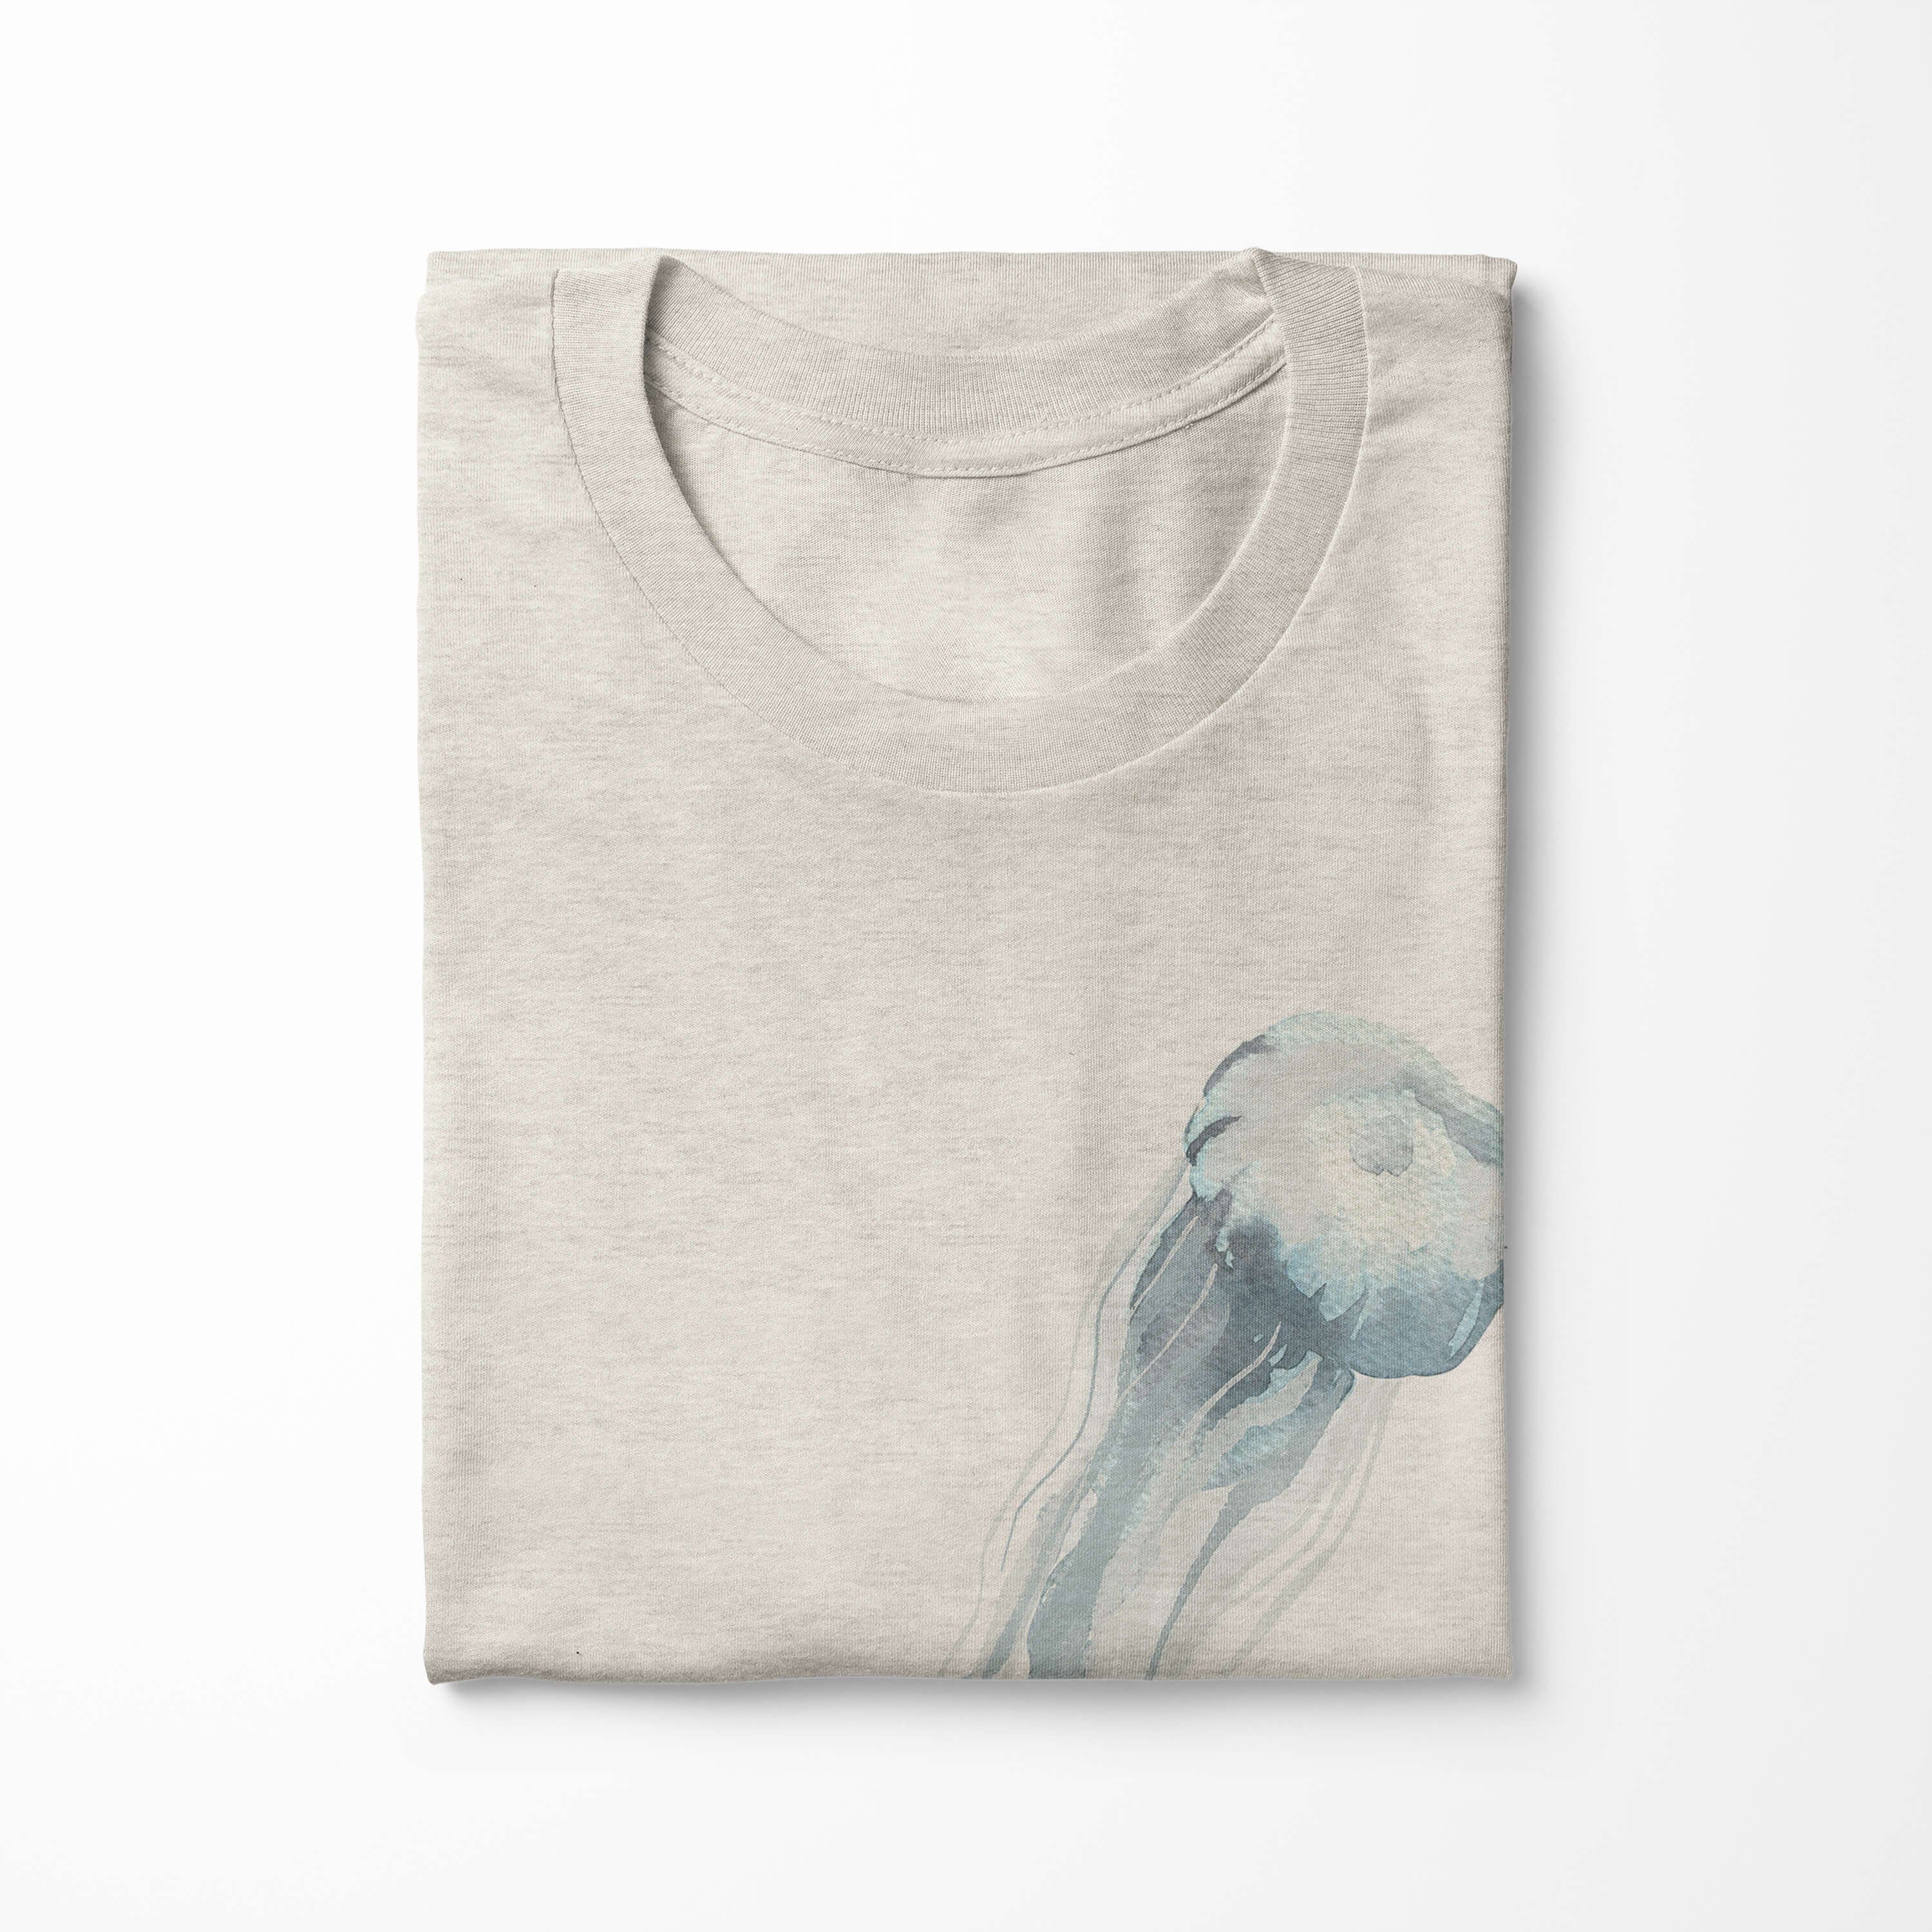 T-Shirt T-Shirt Herren (1-tlg) Bio-Baumwolle gekämmte Qualle 100% Art Shirt Wasserfarben Motiv Ökomode e Sinus Nachhaltig aus